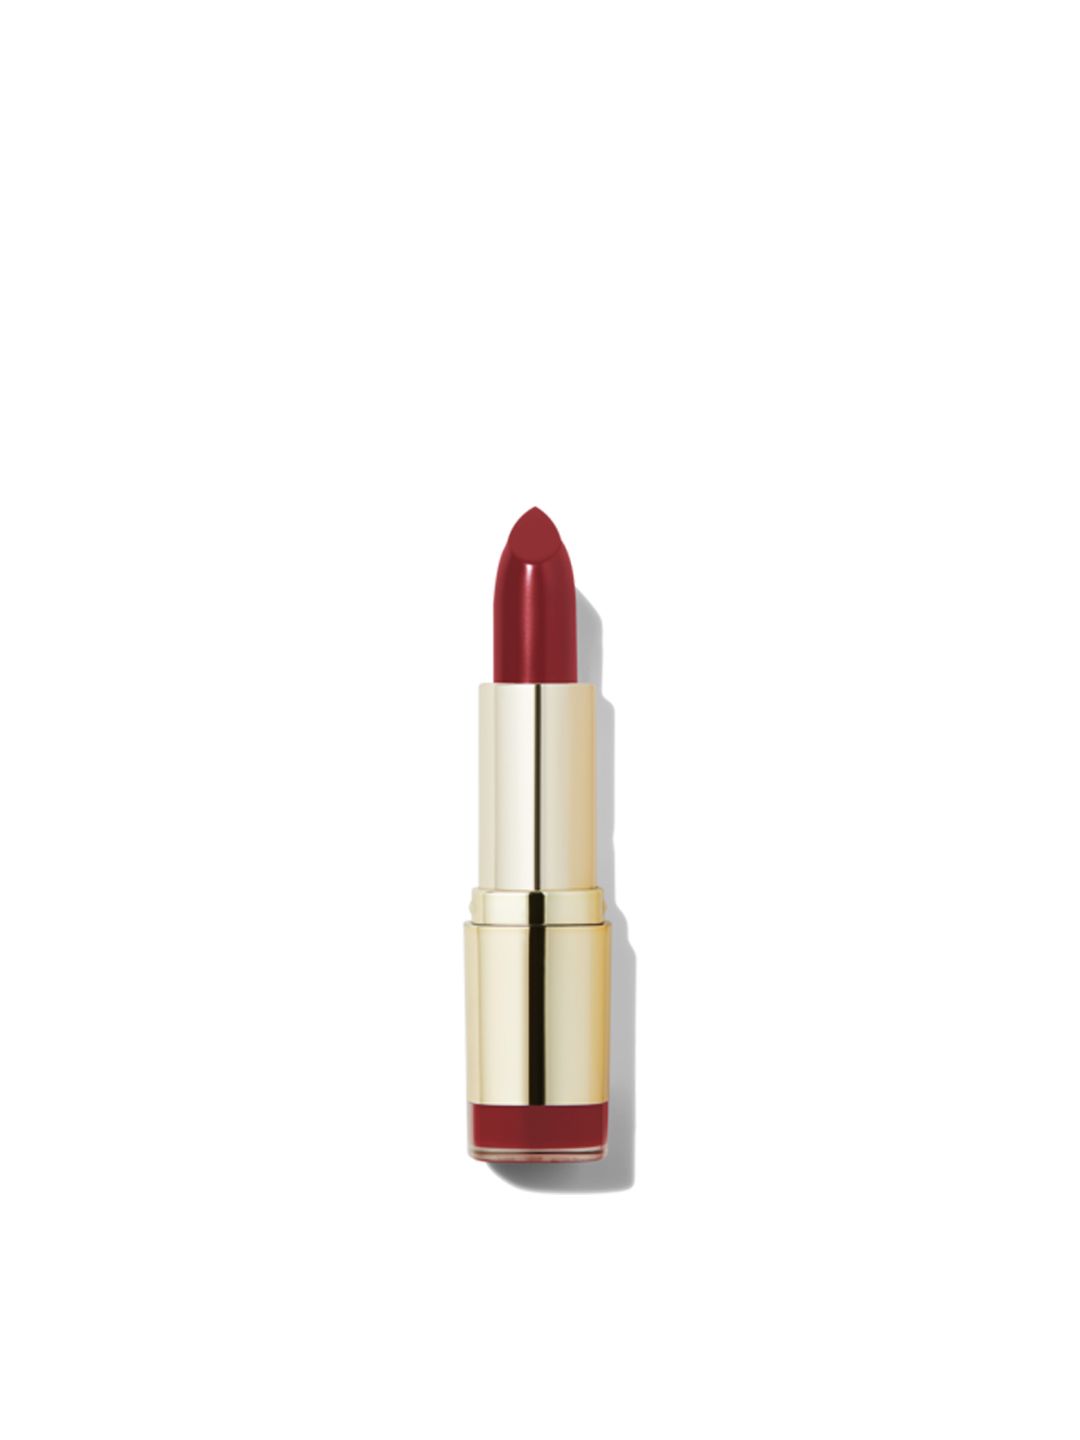 MILANI Matte Color Statement Lipstick Matte Iconic 68 Price in India